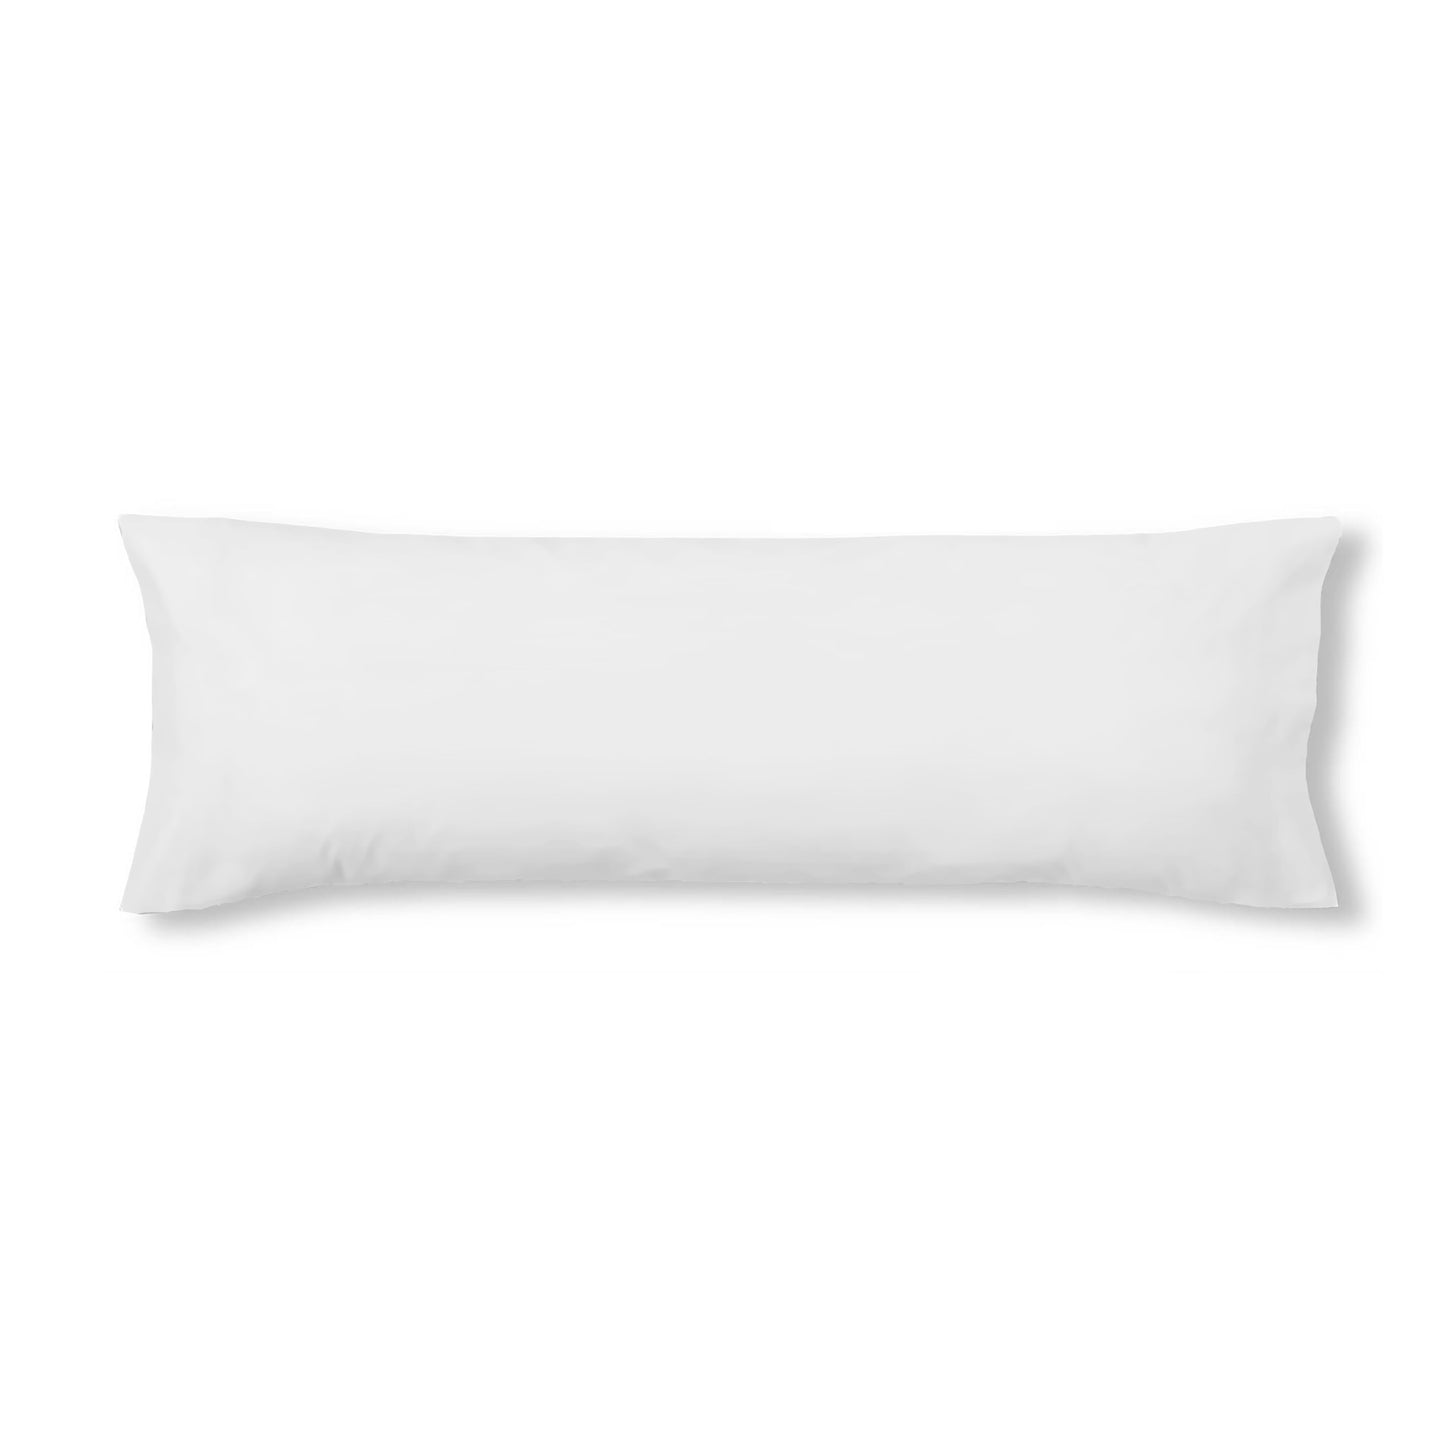 White pillowcase 100% cotton 45x110 cm